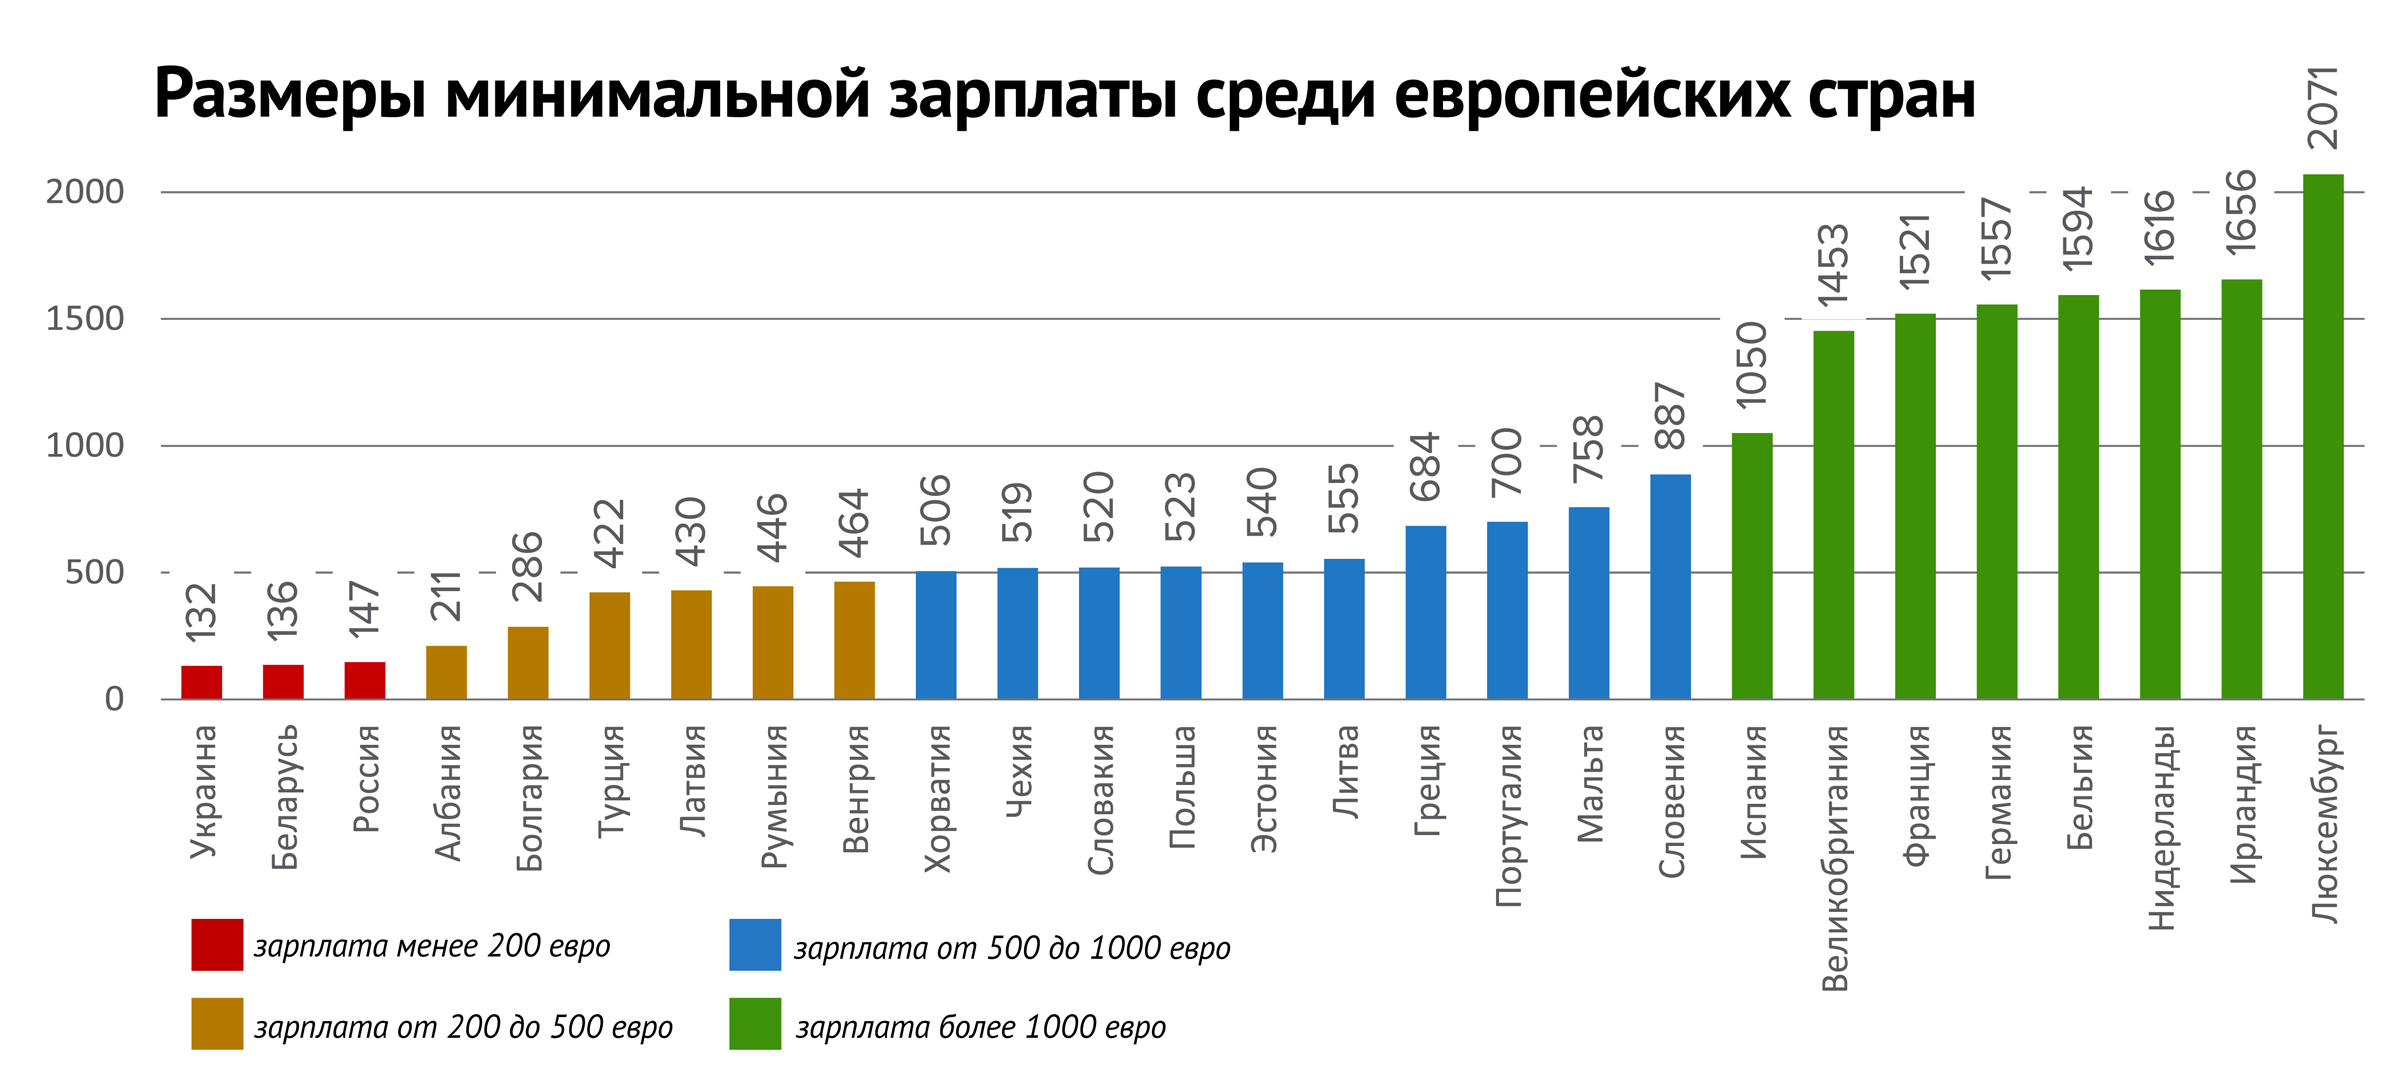 Минимальная зарплата среди европейских стран